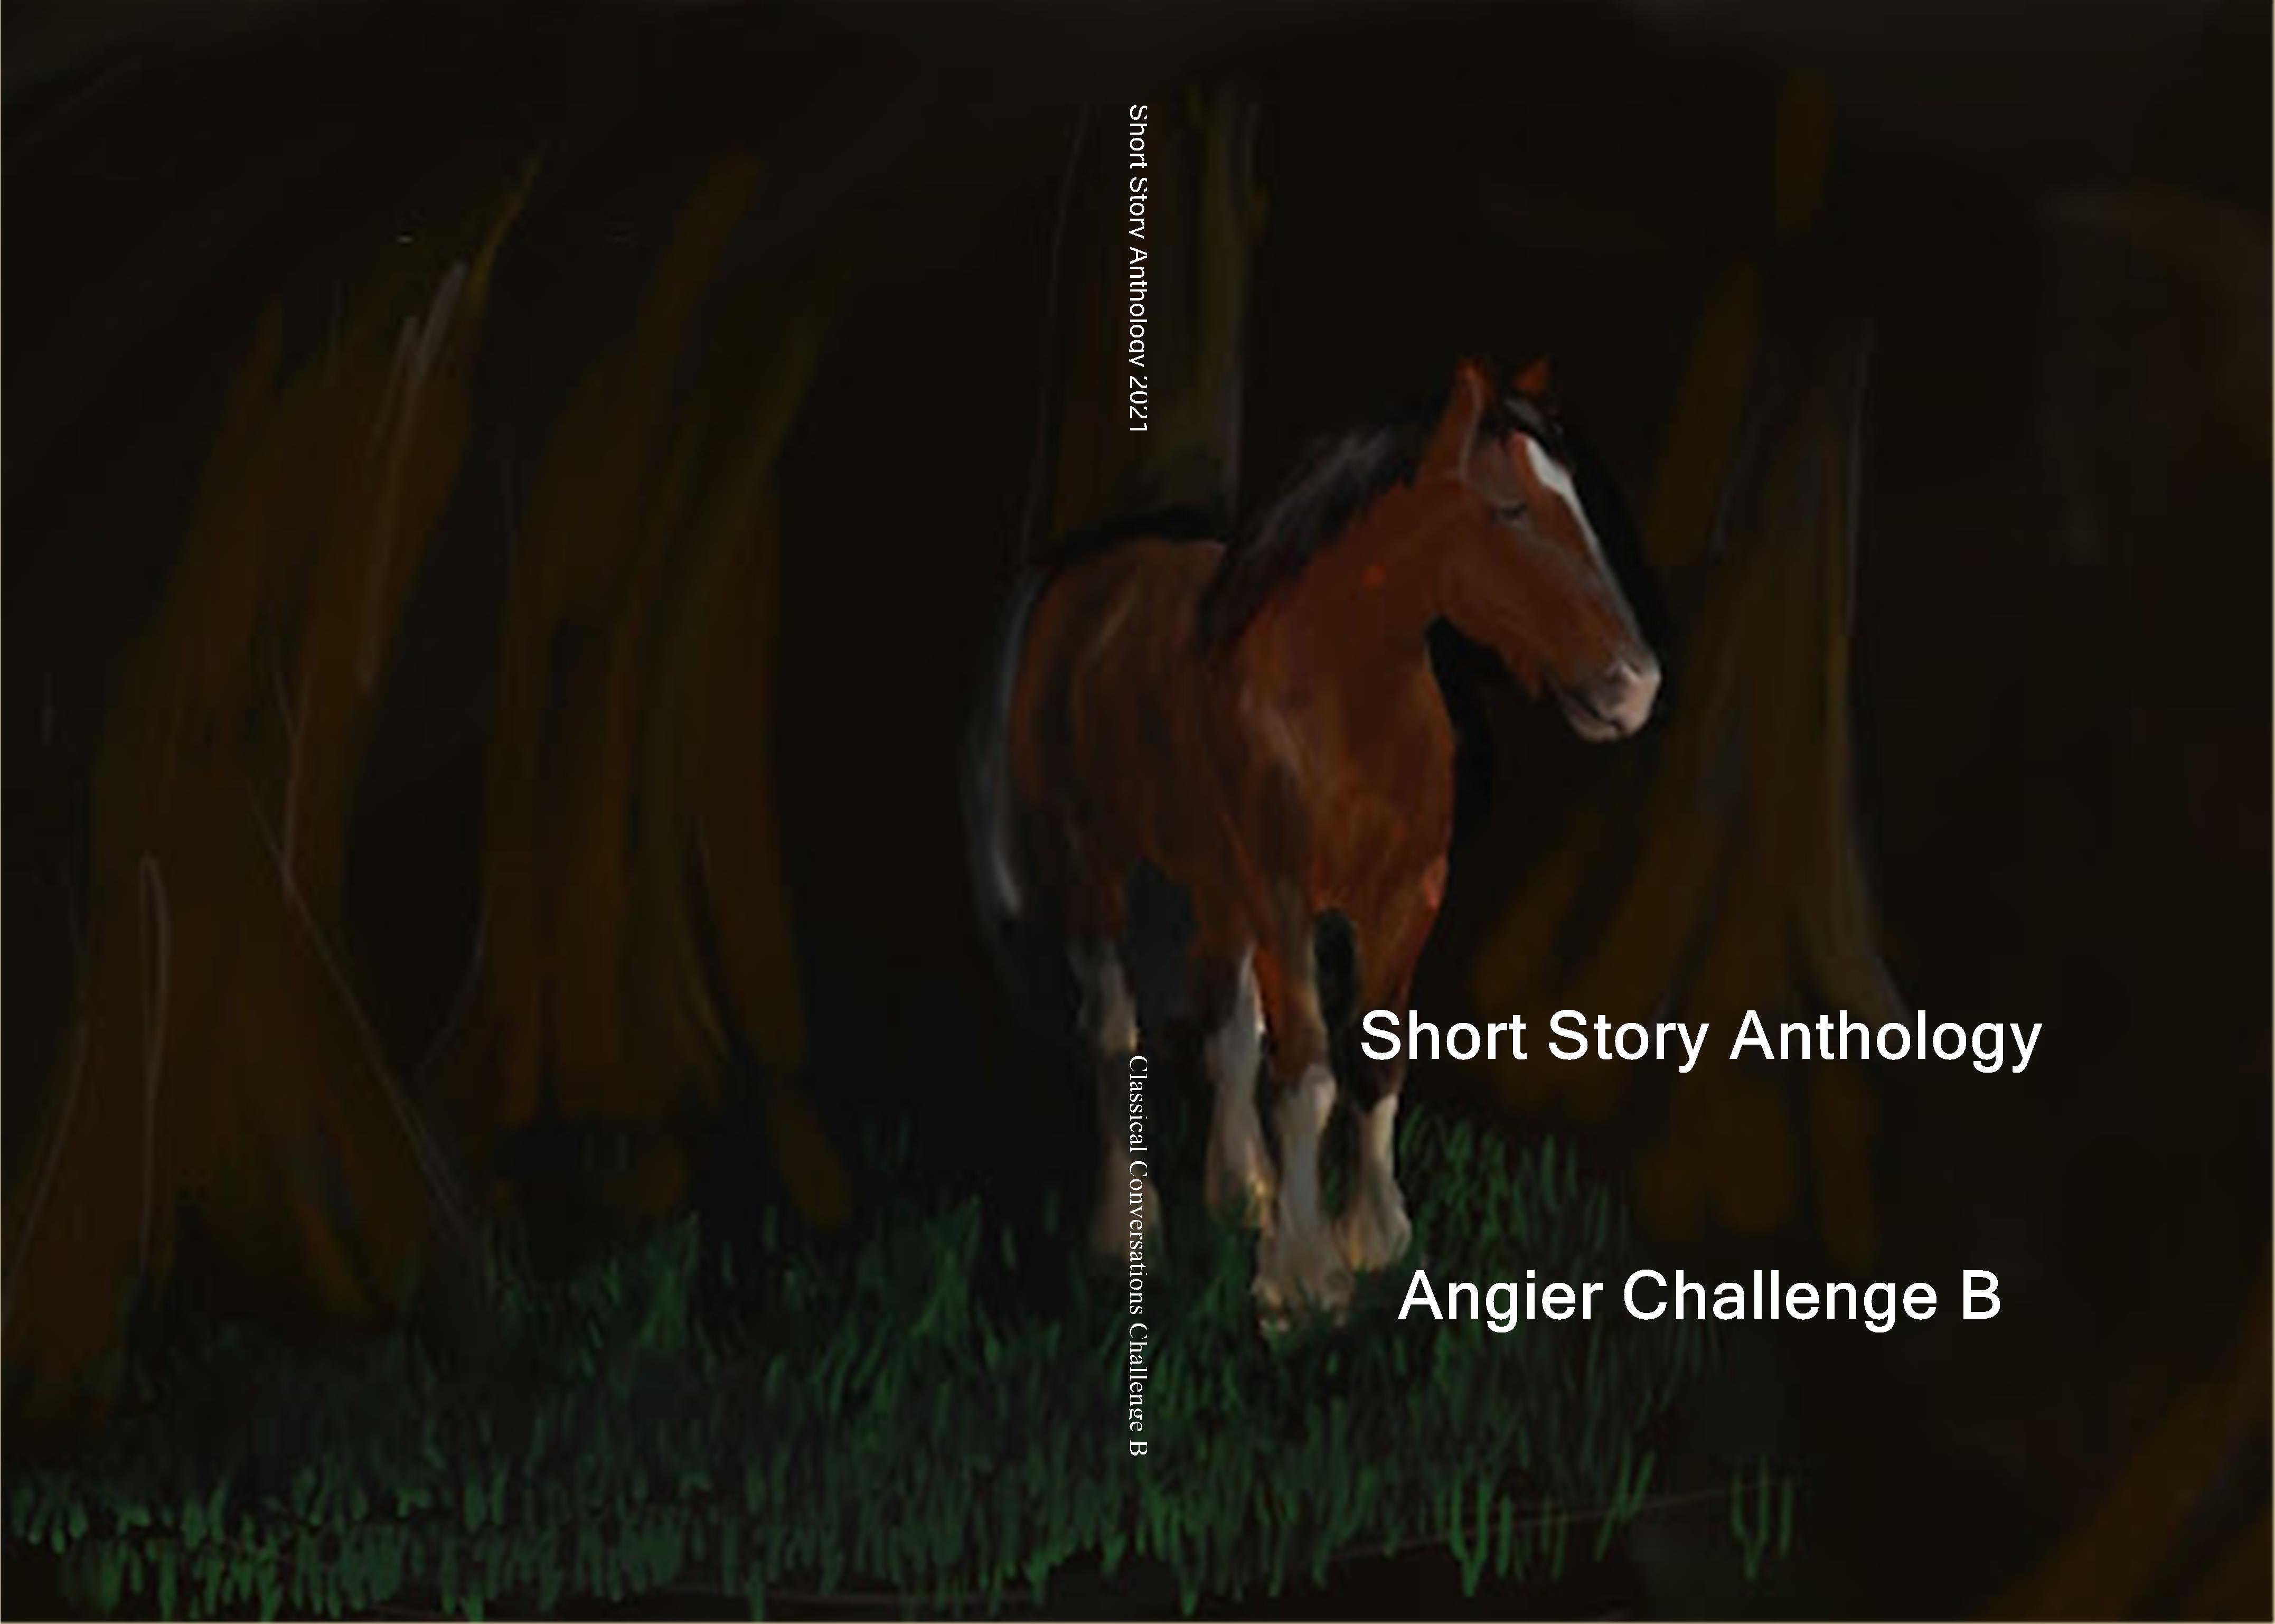 Short Story Anthology cover image